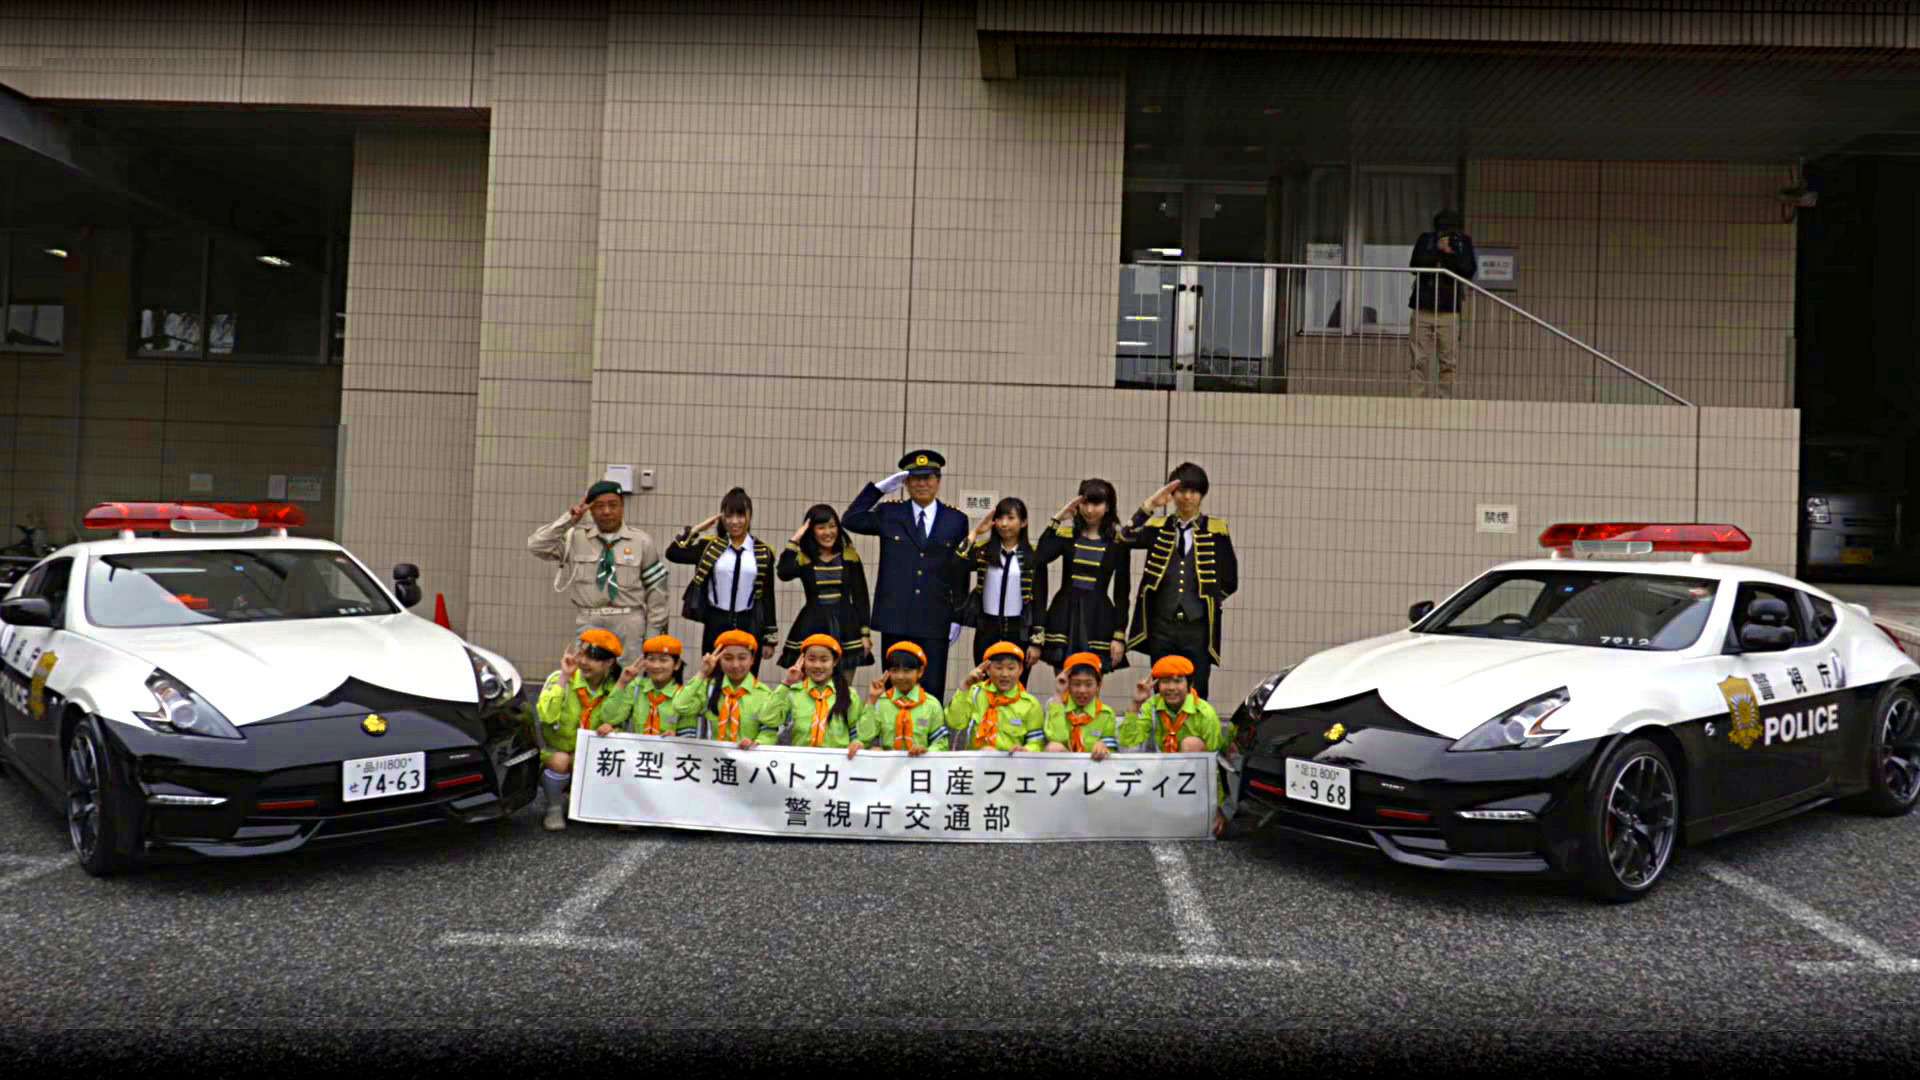 полицейская машина в японии